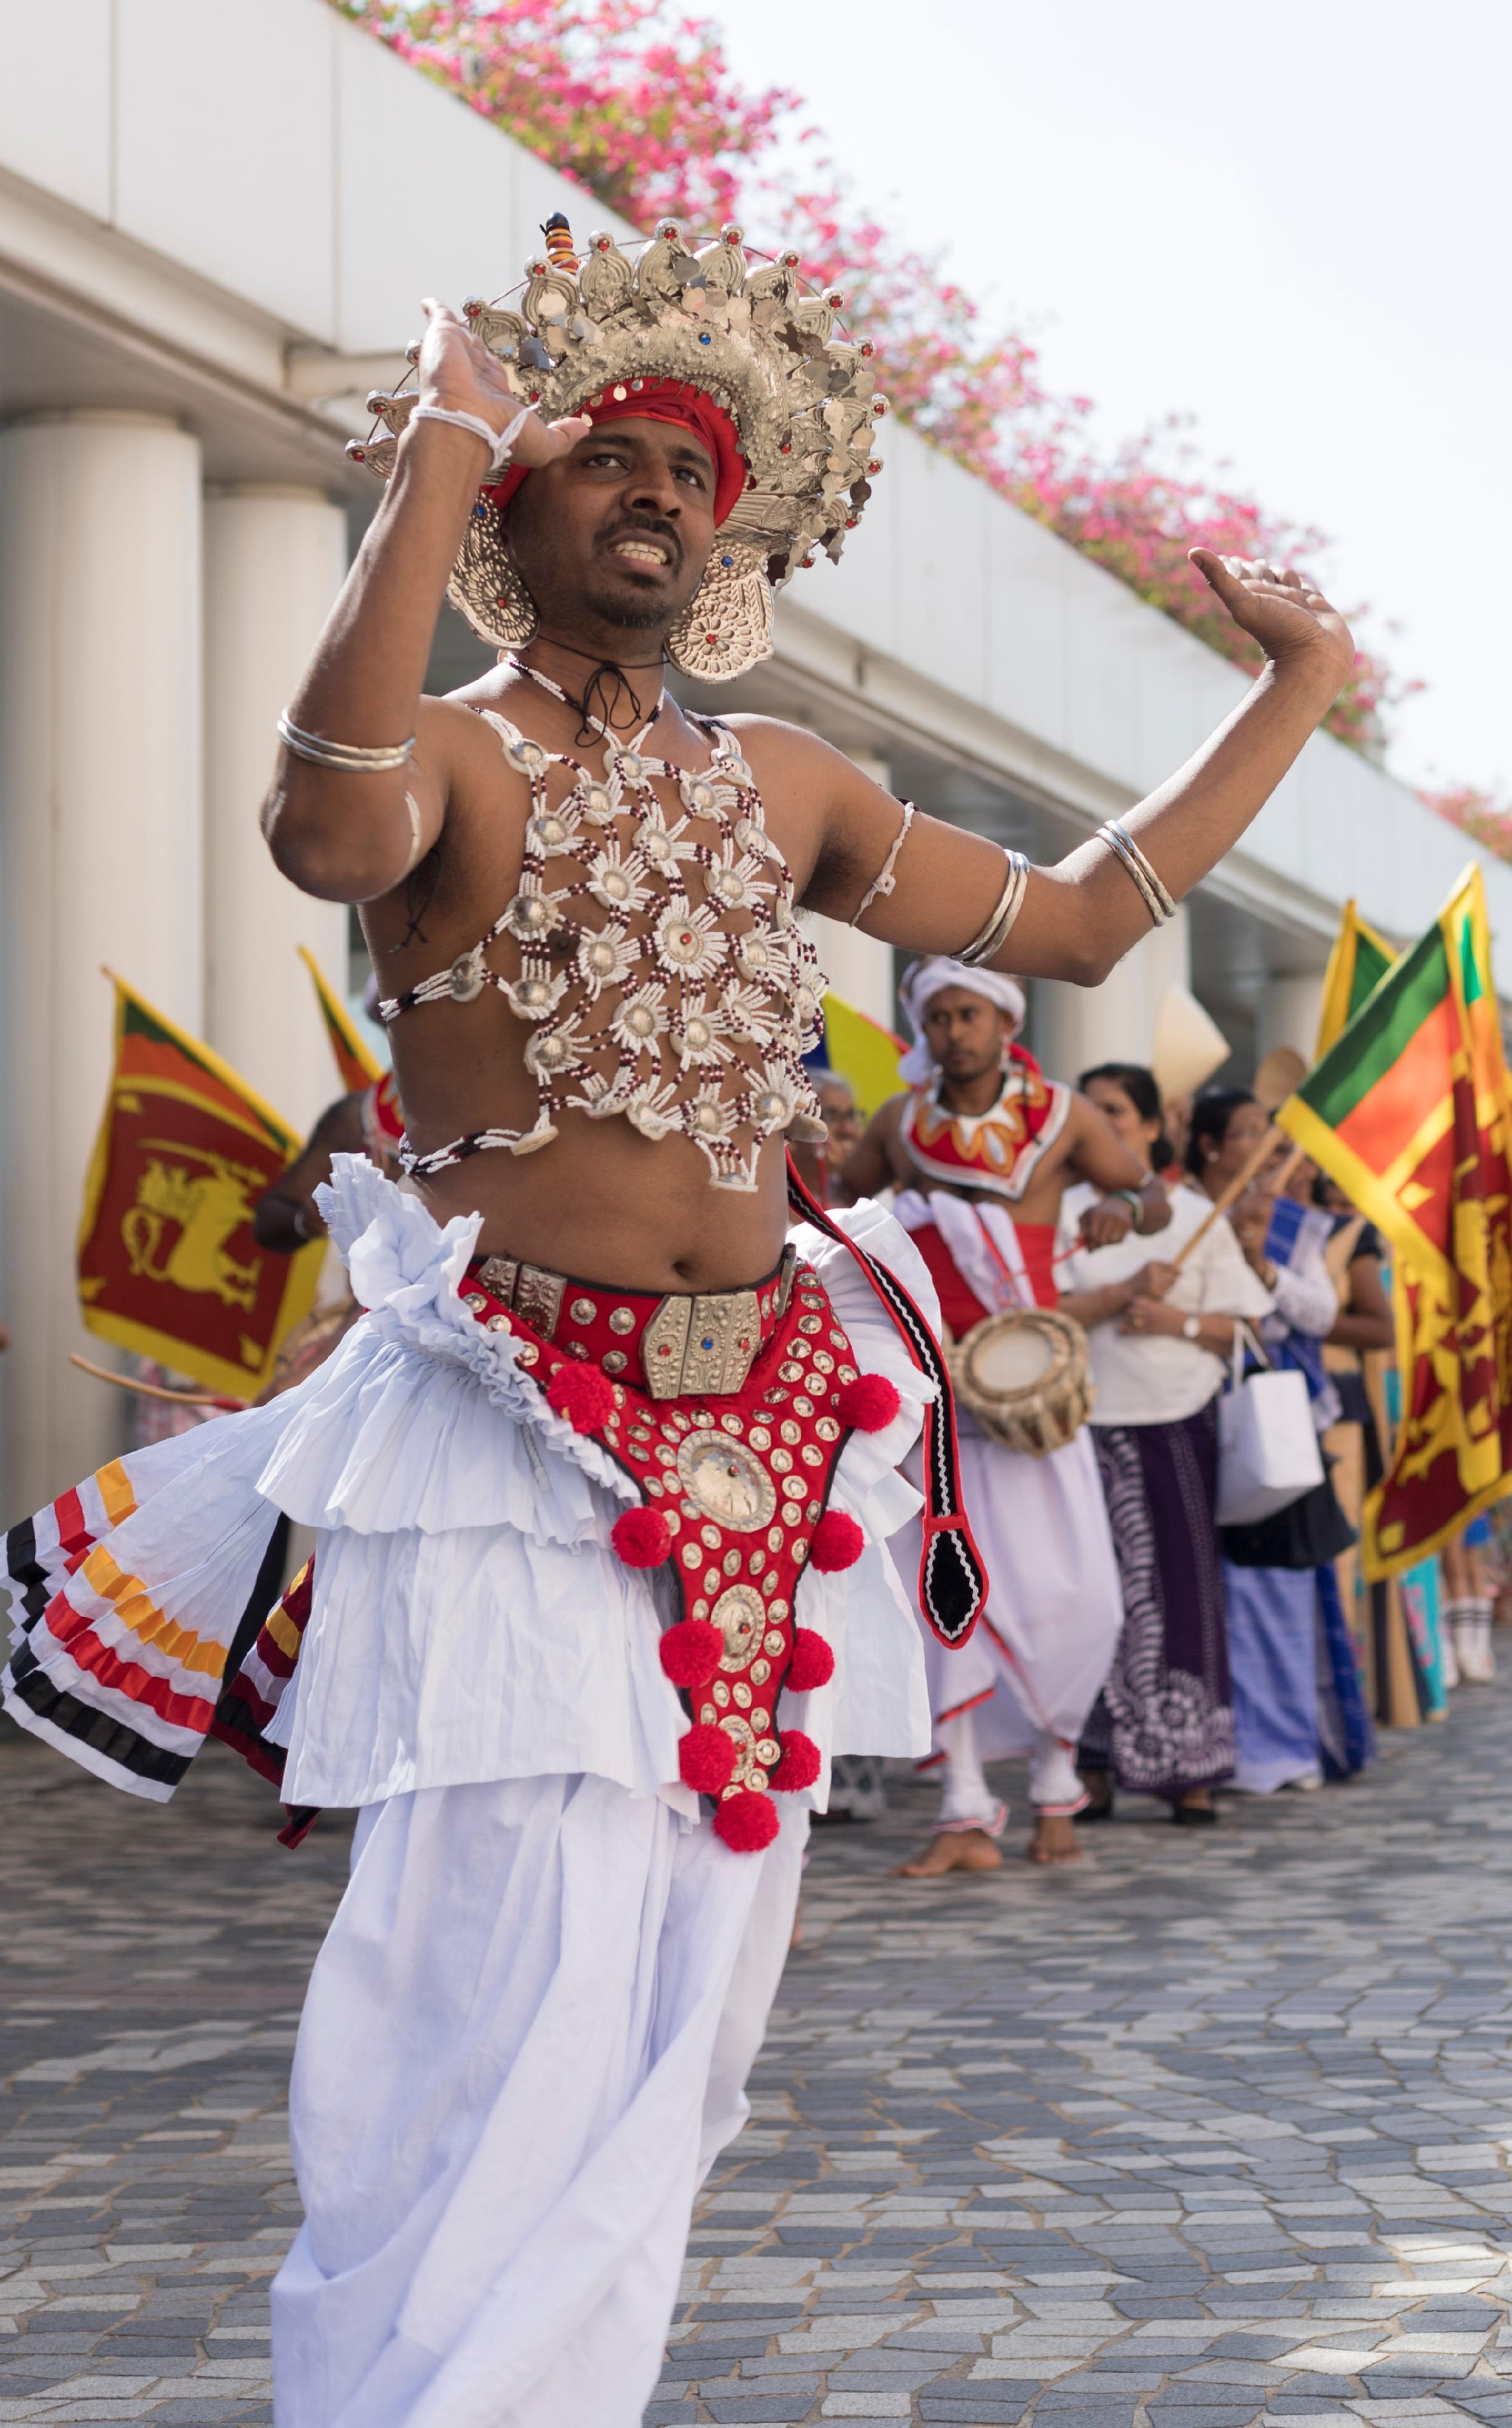 讓市民一睹亞洲多個民族文化色彩的「亞裔藝采」將於十一月十二日（星期日）下午一時至五時在香港文化中心露天廣場及大堂舉行，透過豐富的民族舞、樂器表演、服裝和武術表演，展現亞洲各地的文化和演藝才華。圖示斯里蘭卡康提舞蹈服飾。